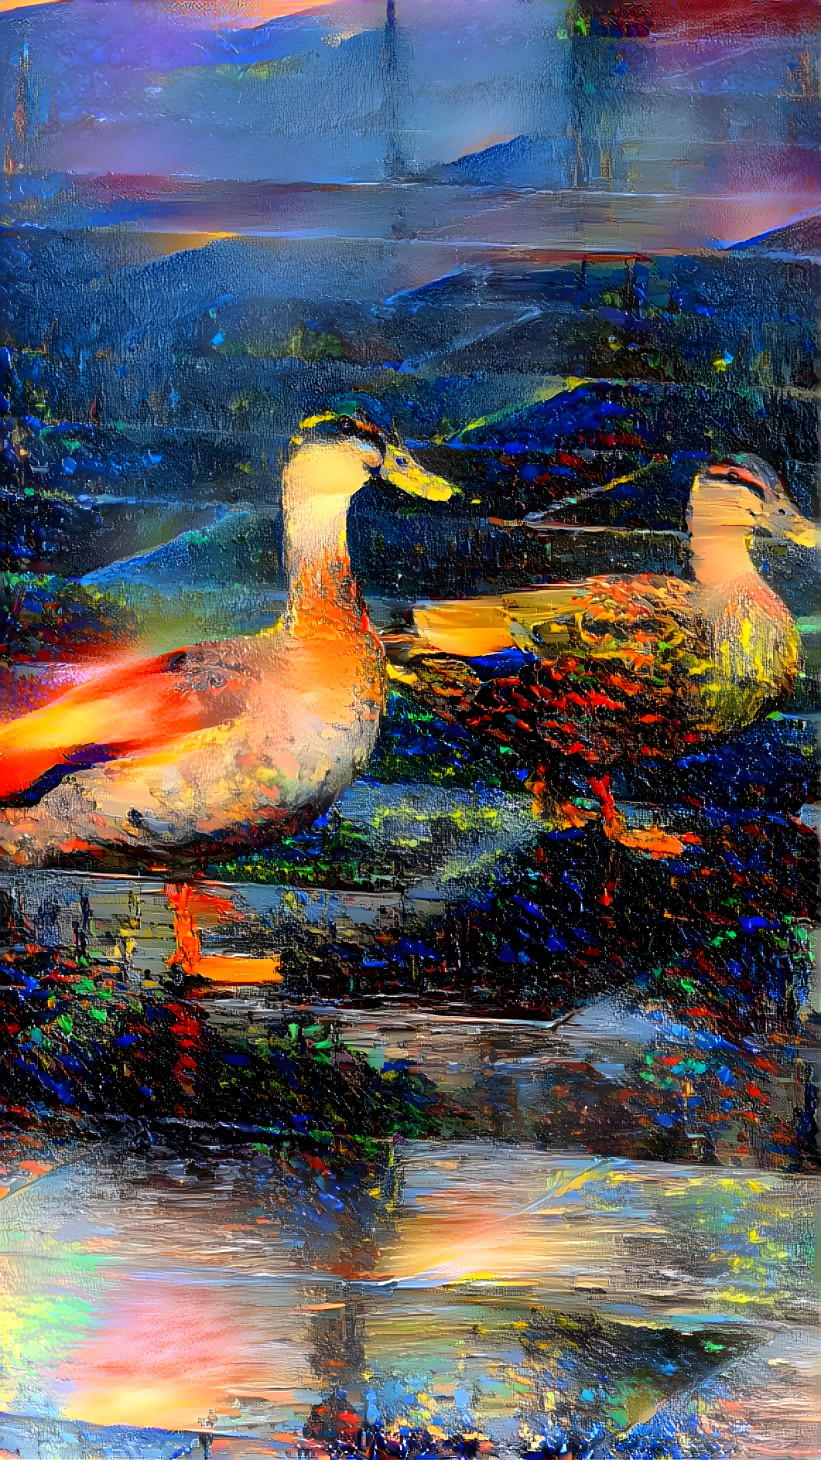 Ducks in town